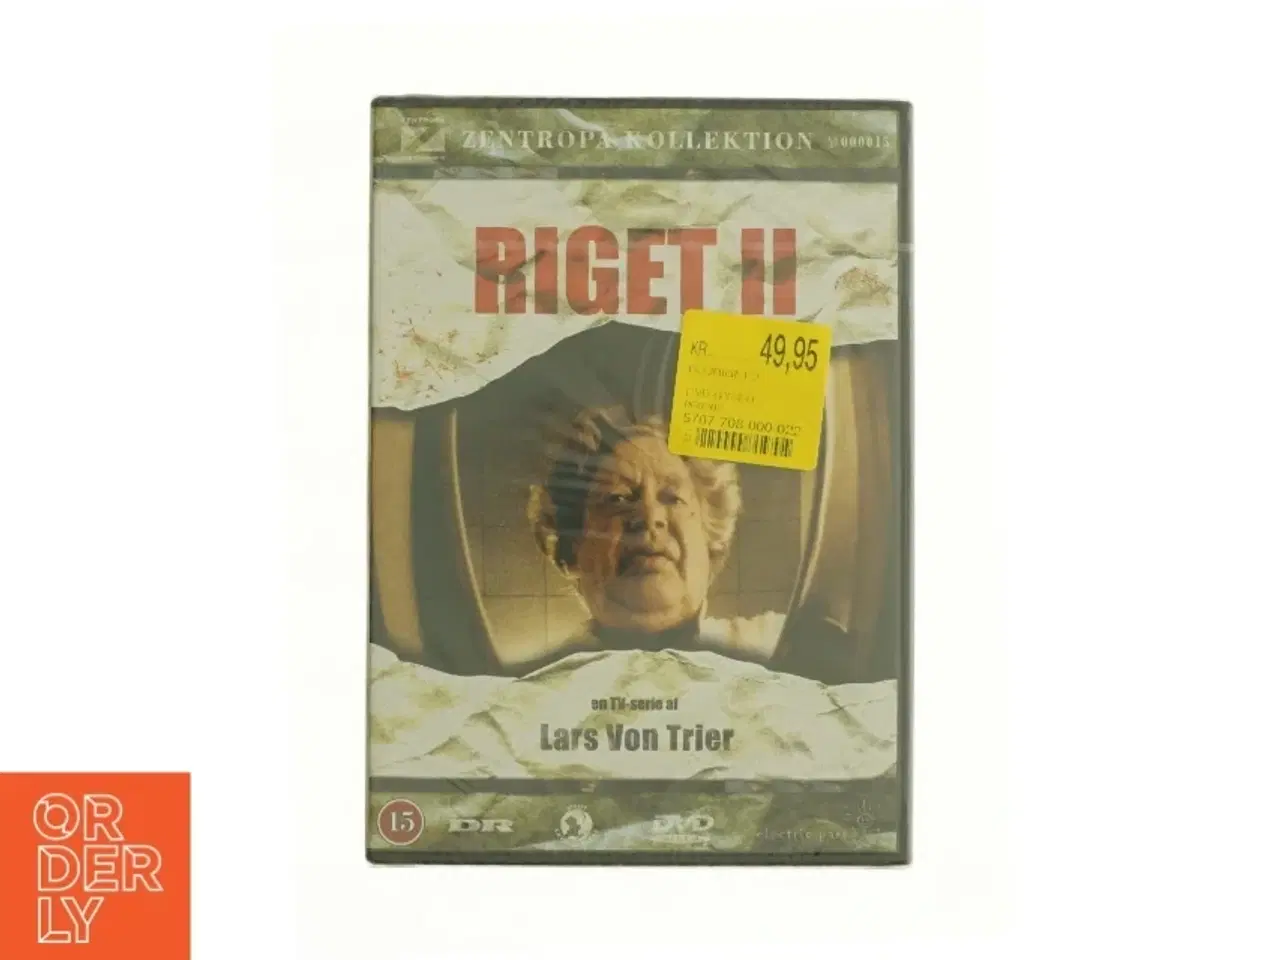 Billede 1 - Riget 2 fra DVD